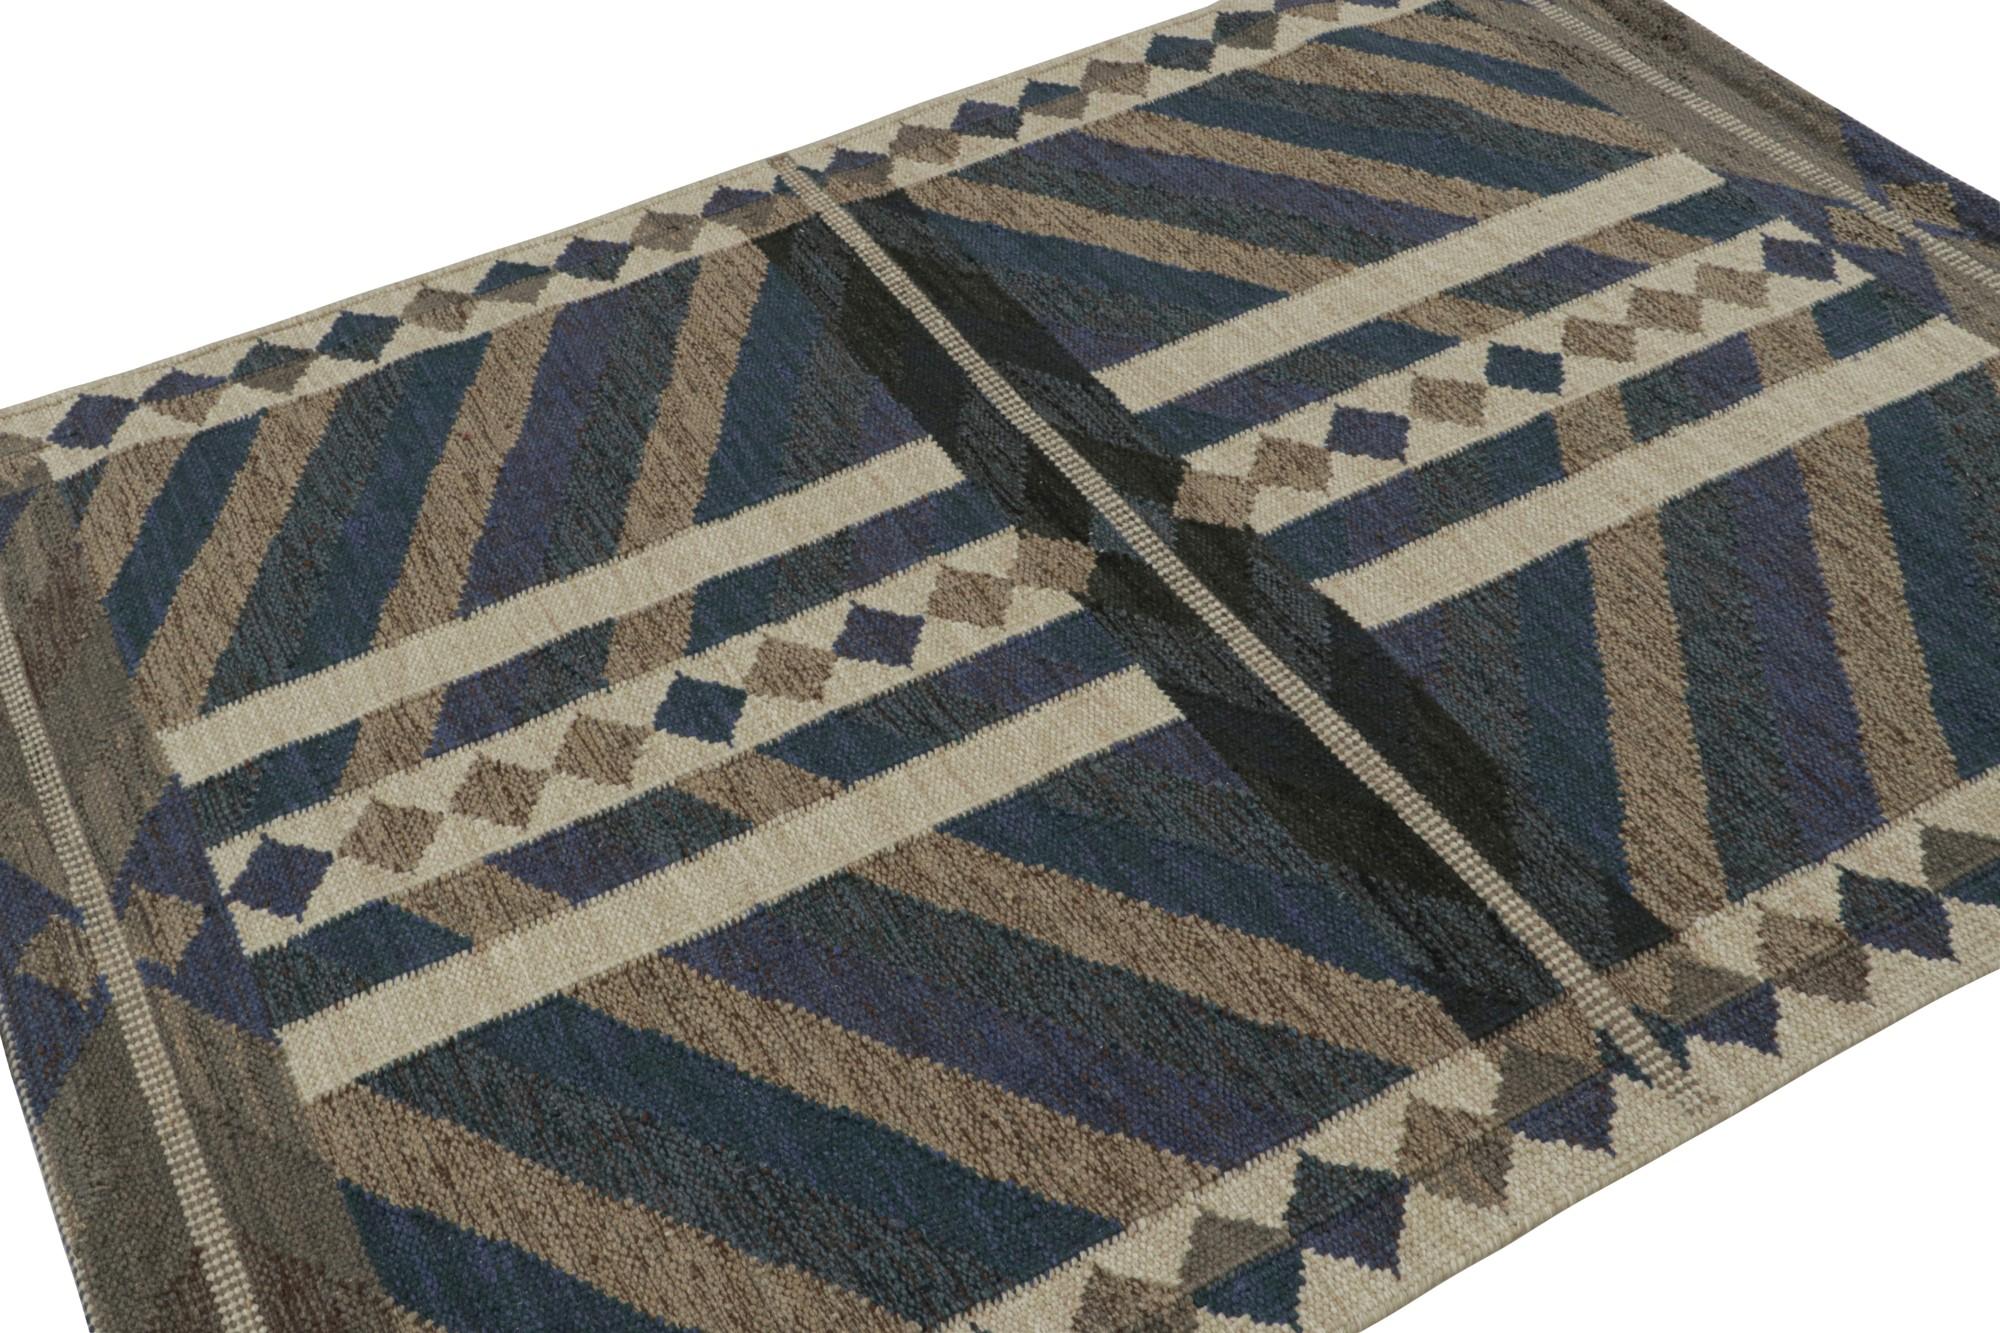 Ein eleganter schwedischer Kelim 5x7 aus unserer preisgekrönten skandinavischen Flachgewebekollektion. Handgewebt aus Wolle und ungefärbten Naturgarnen.

Über das Design: 

Dieser Teppich hat blaue und beigefarbene geometrische Muster in einem der